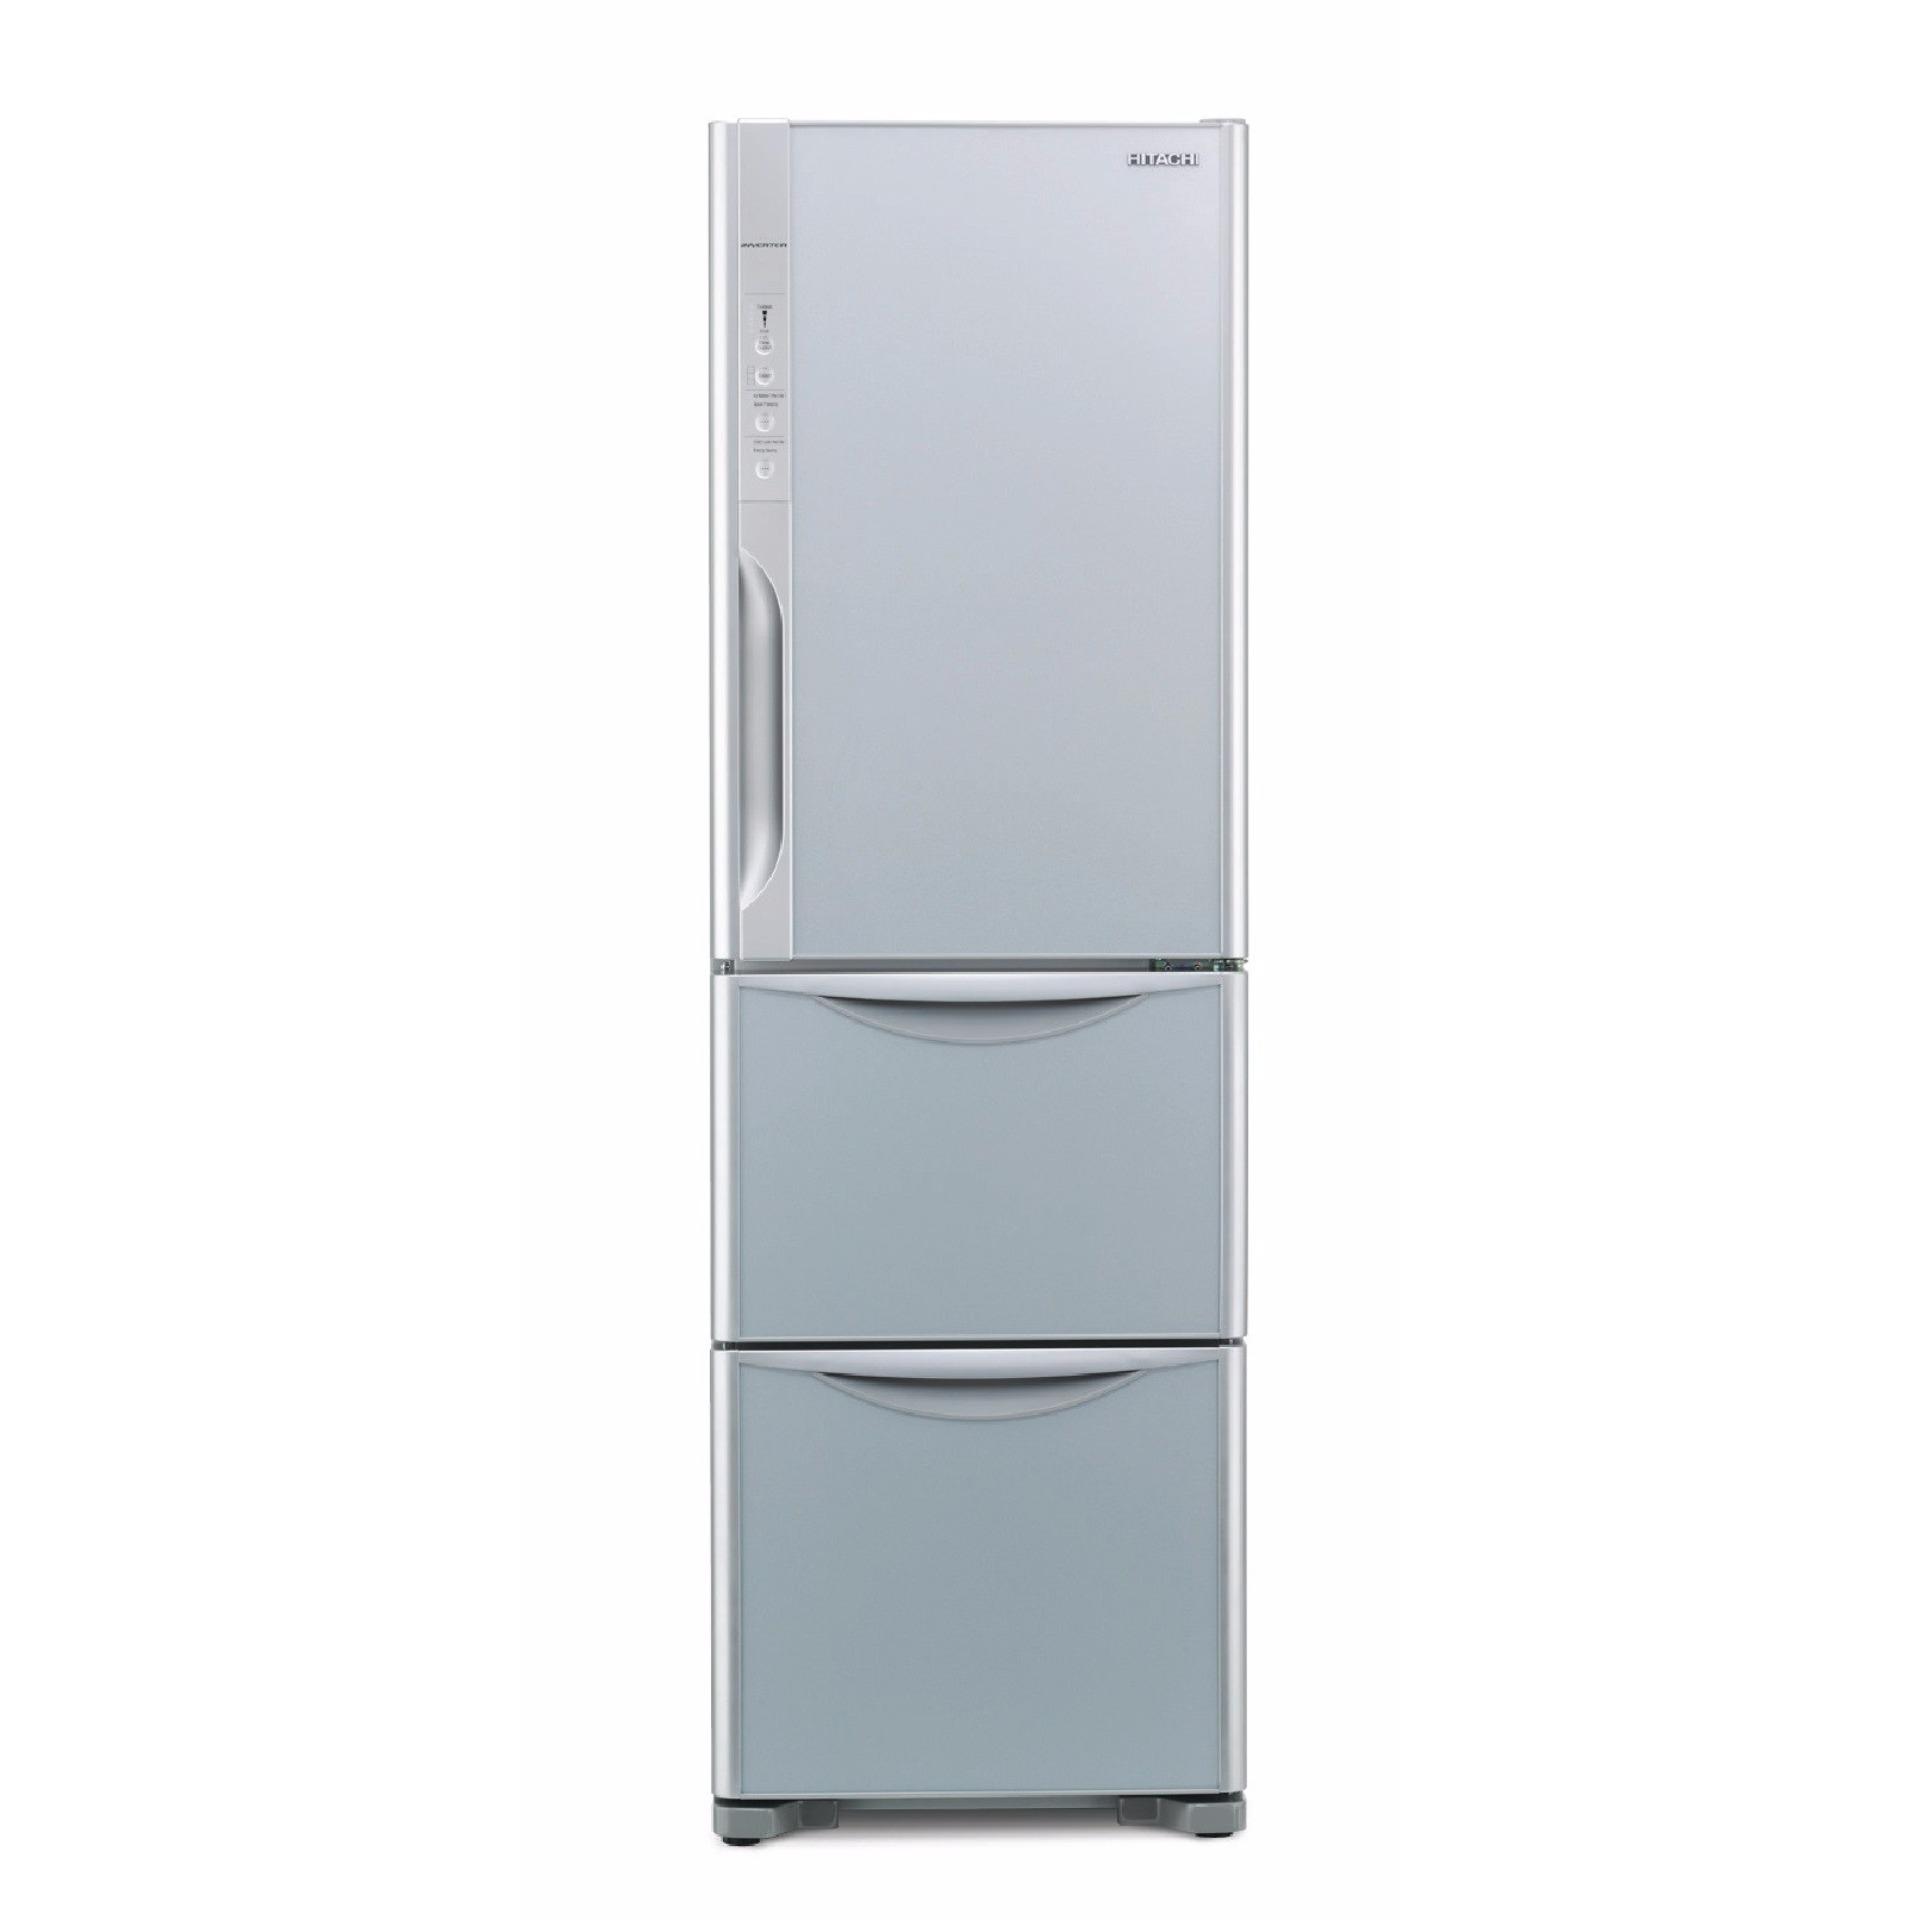 Tủ lạnh Hitachi SG38FPG(GBW)(Bạc)